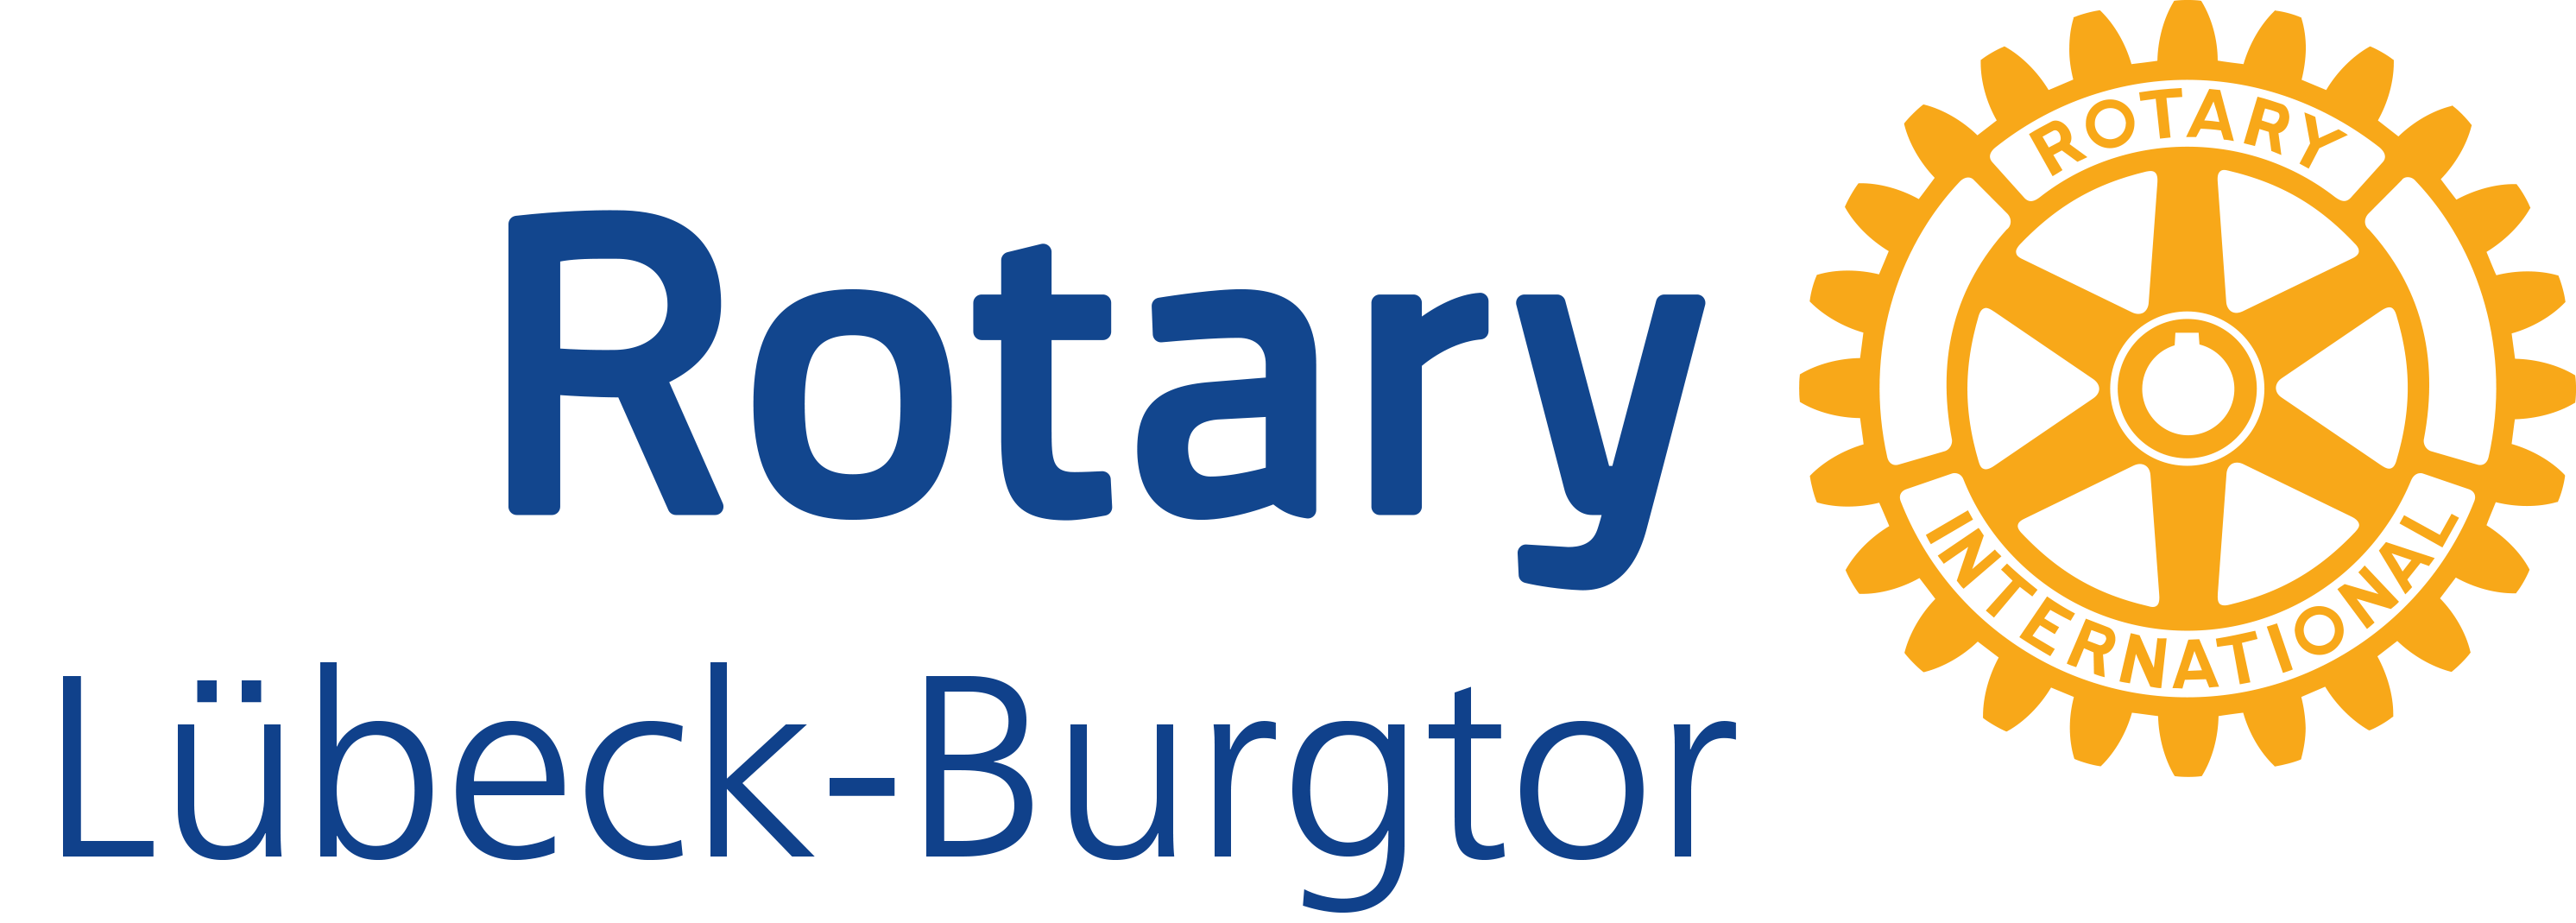 Rotary Lübeck Burgtor